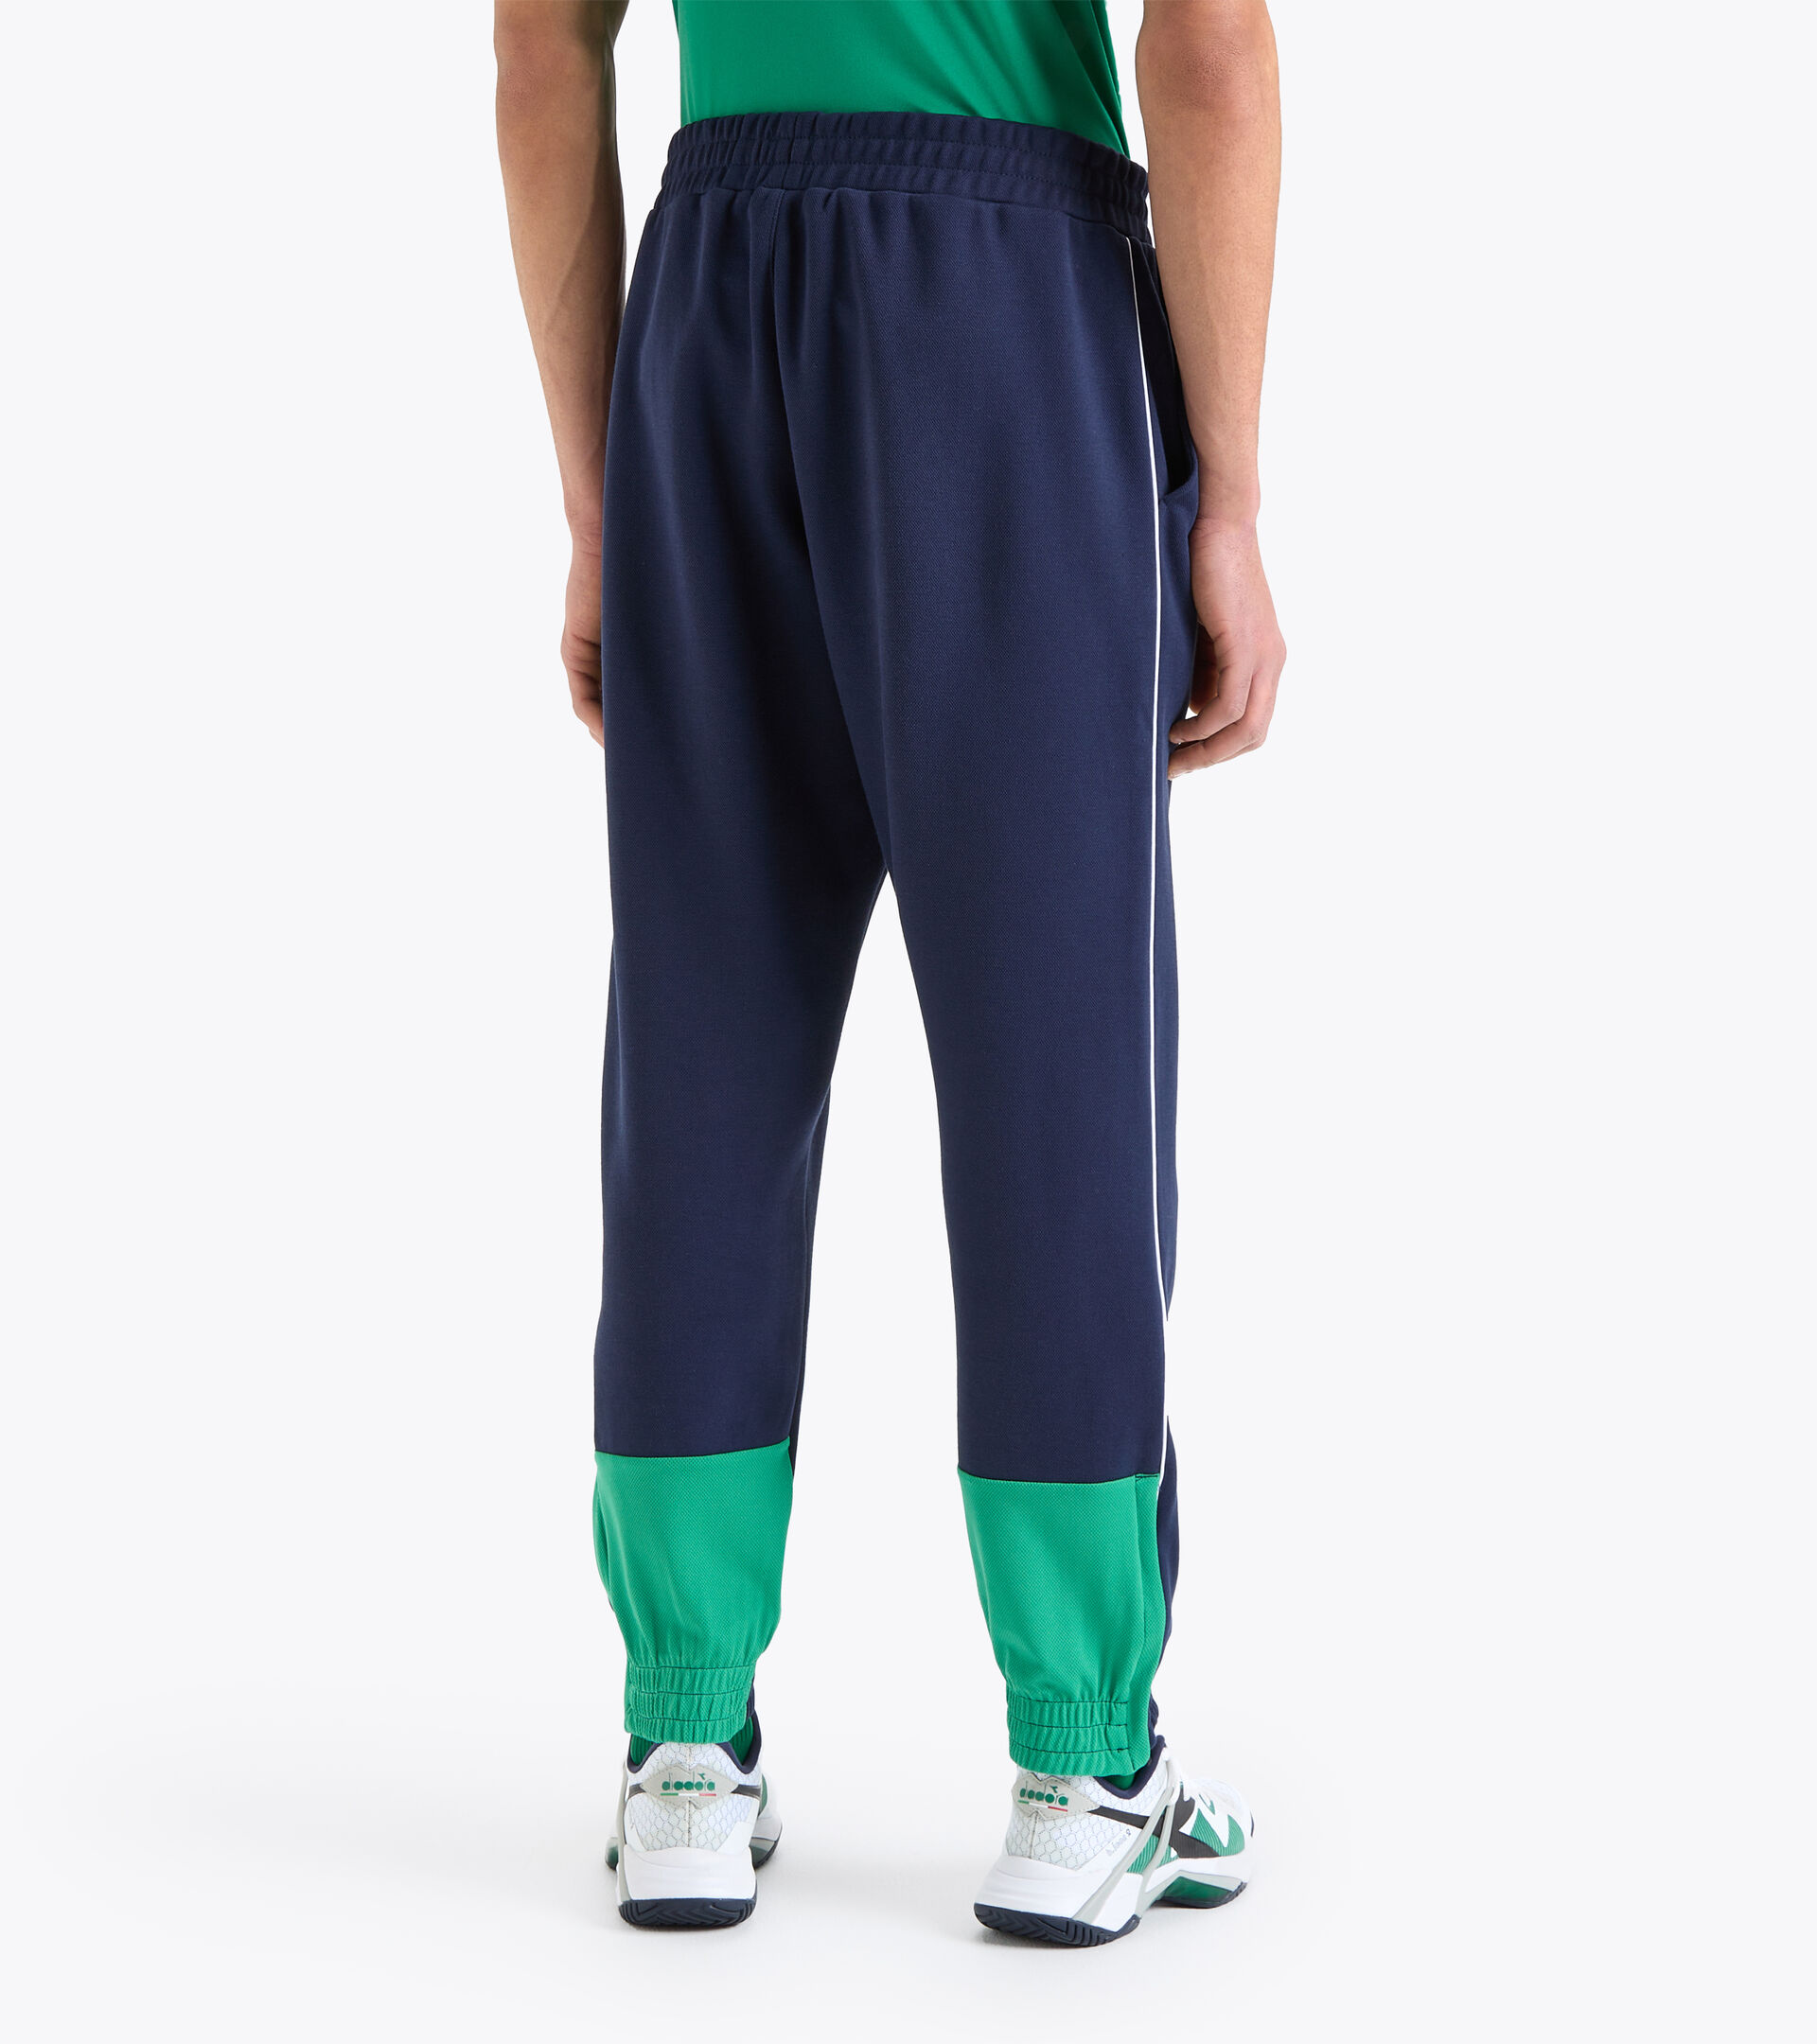 PANTS Tennis pants - Men - Diadora Online Store CA